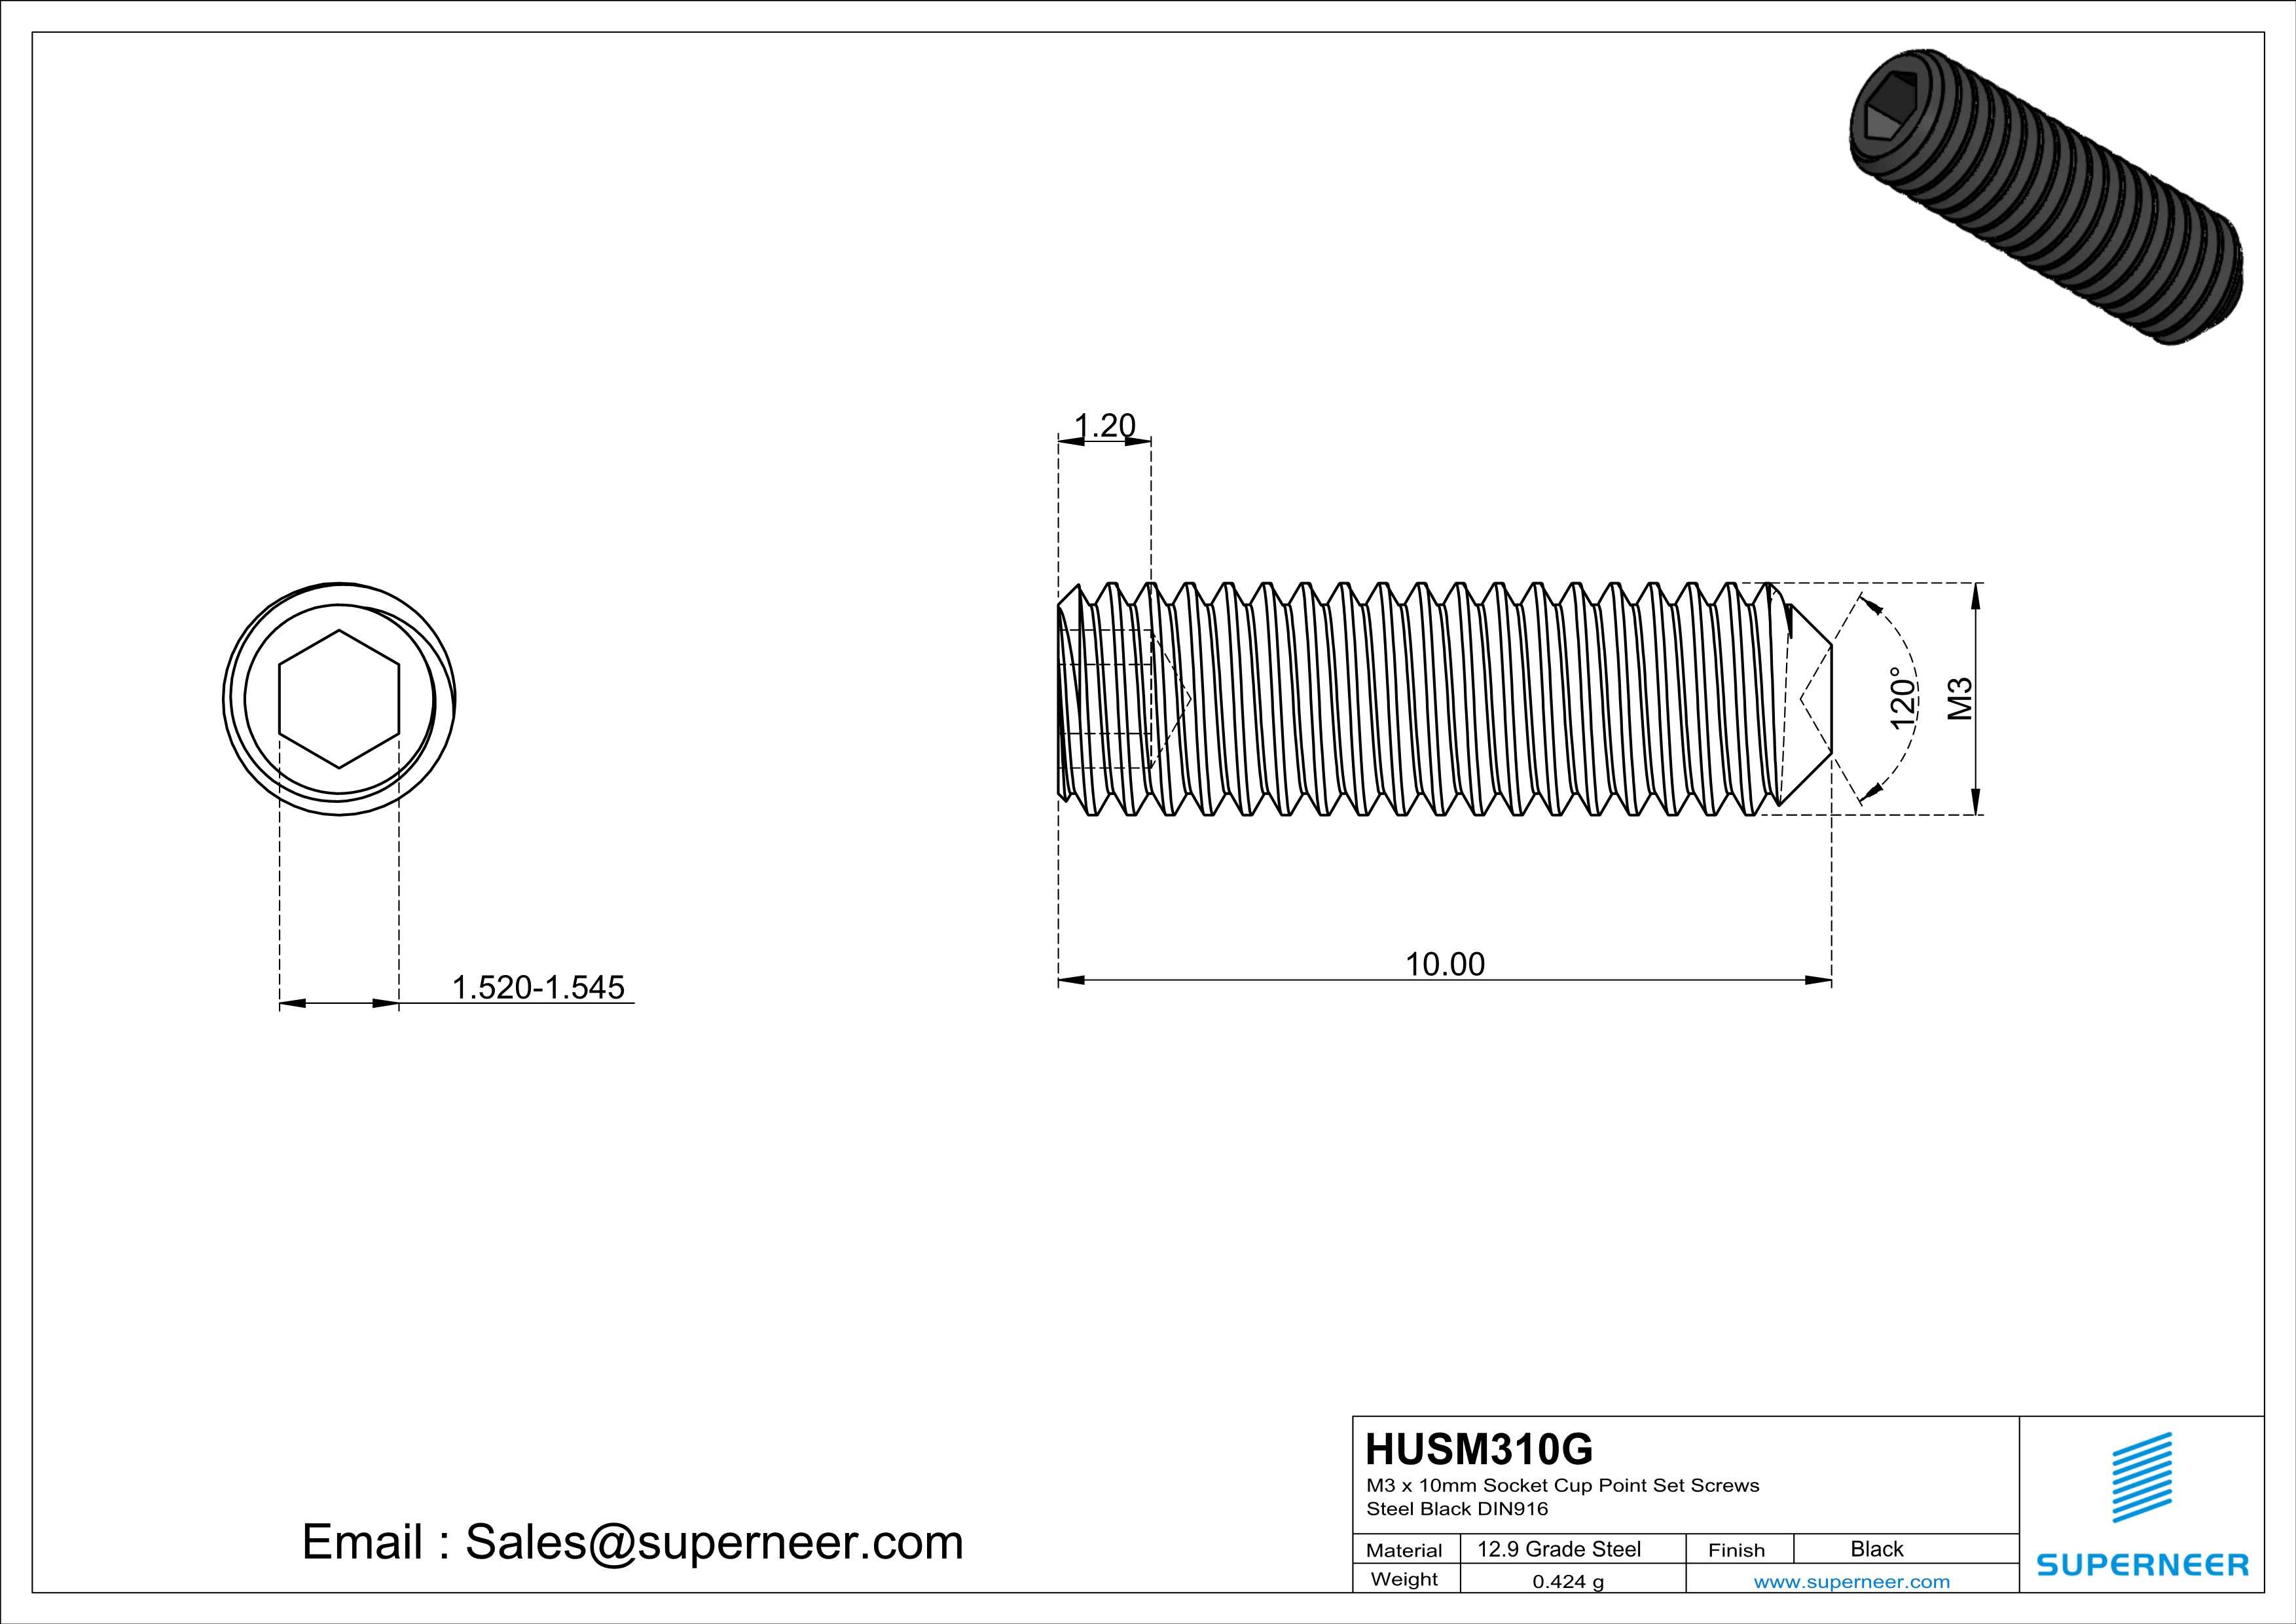 M3 x 10mm Socket Cup Point Set Screws 12.9 Carbon Steel Black DIN916